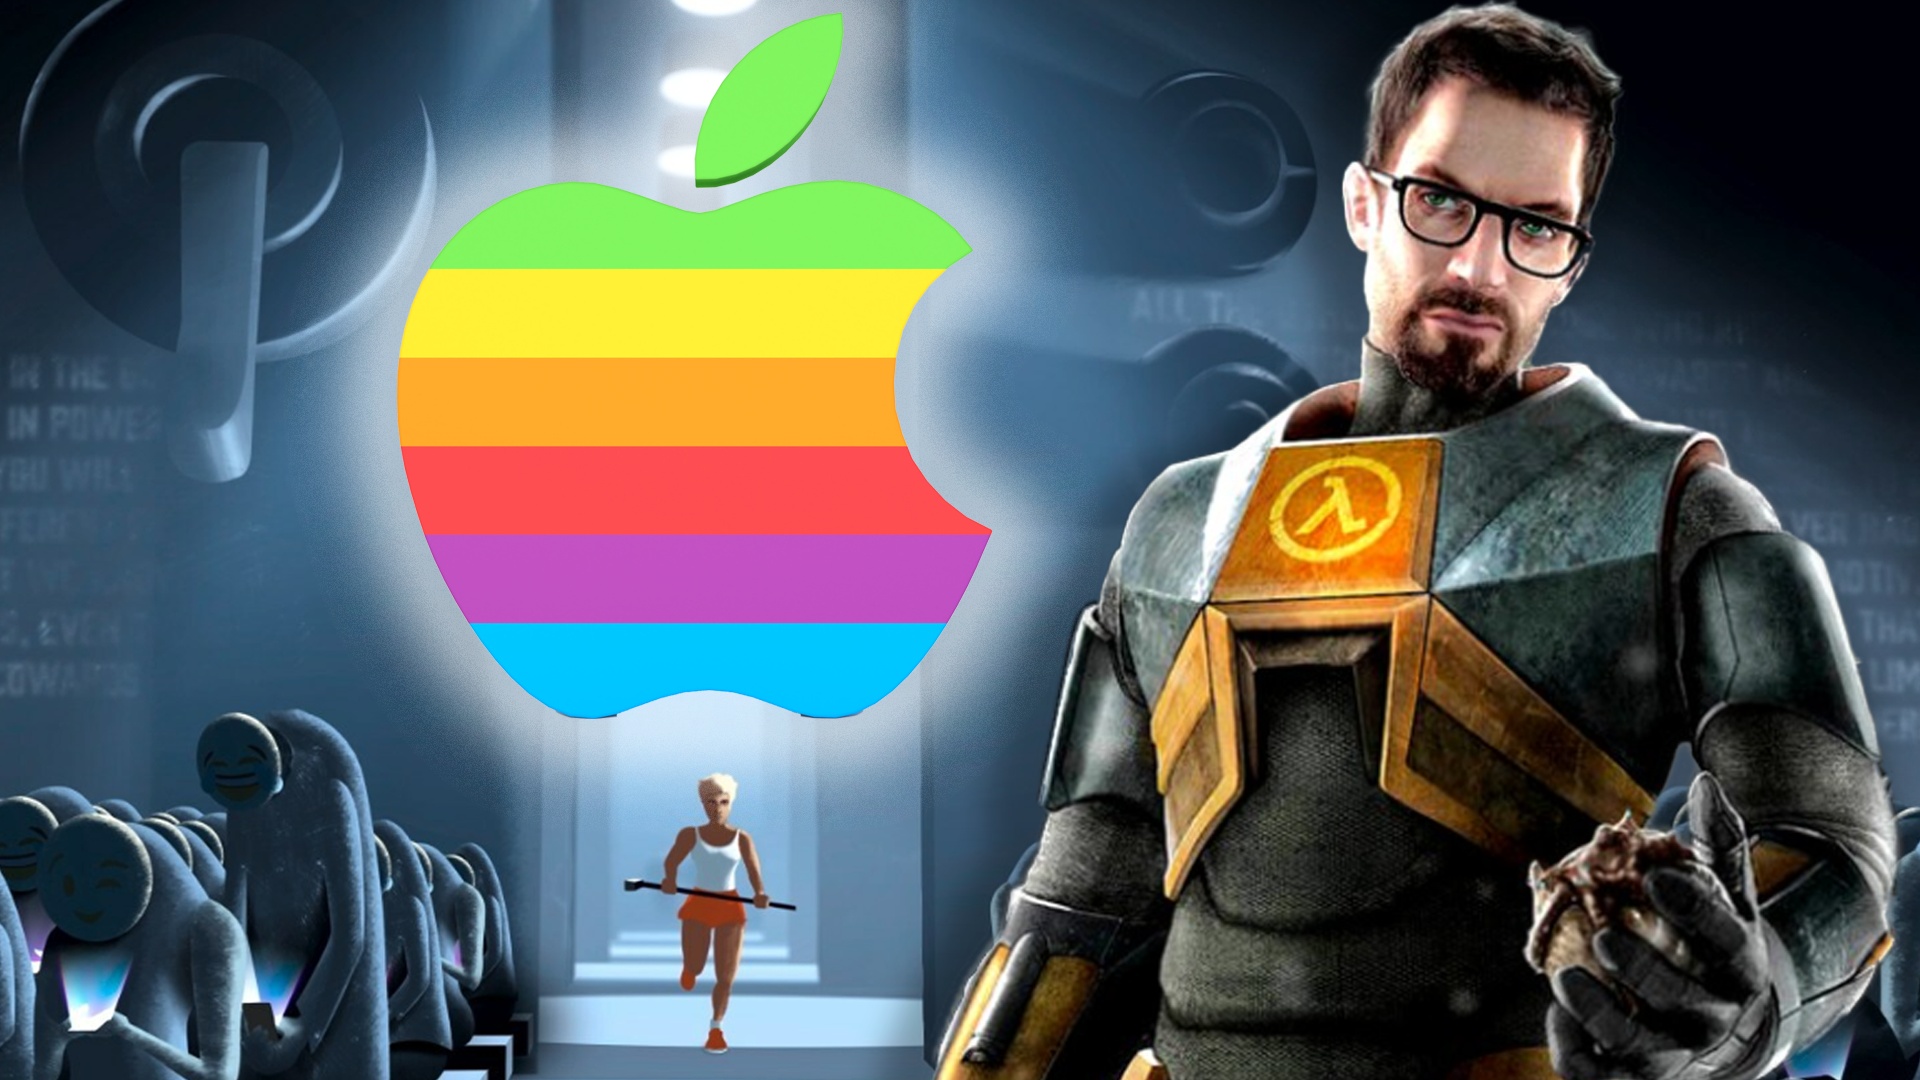 Vor 40 Jahren zeigte Apple einen der berühmtesten Werbespots aller Zeiten, den sogar Half-Life 2 und Fortnite veräppelt haben